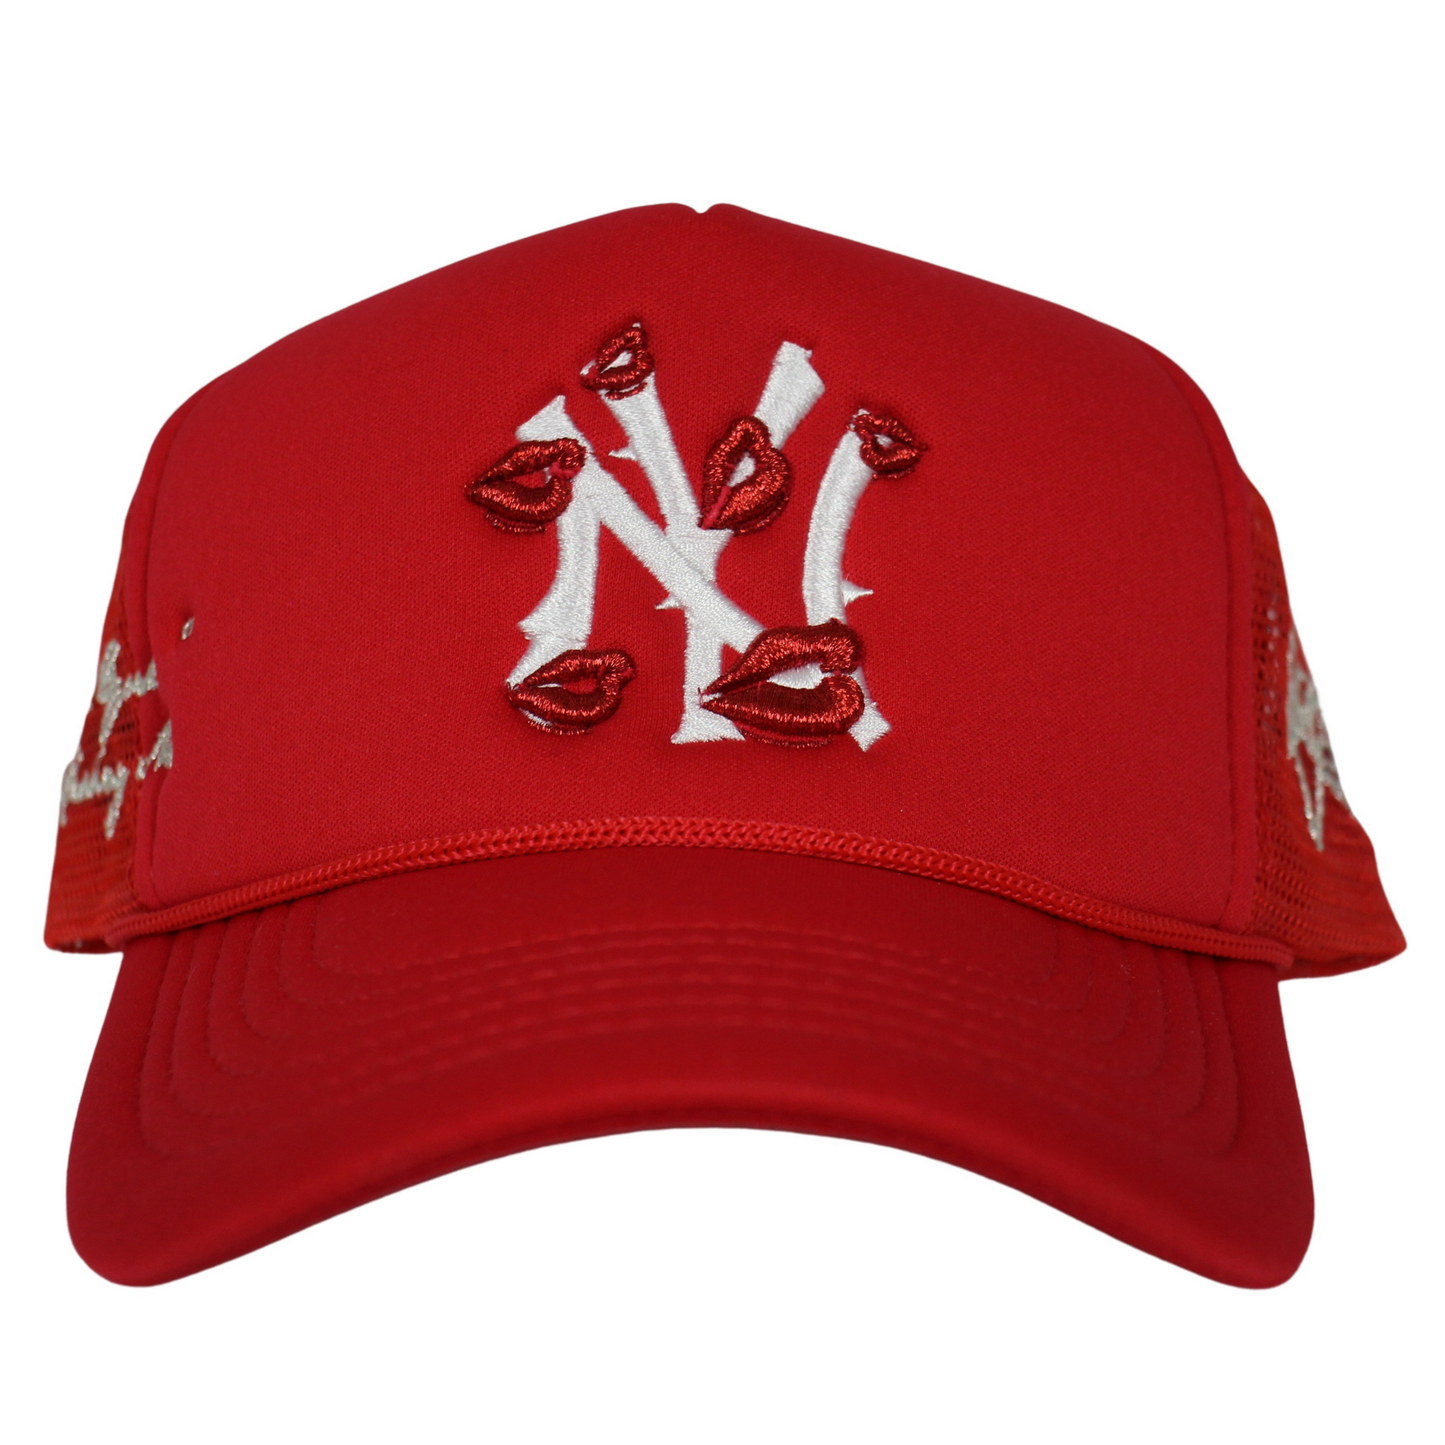 La Ropa NY Trucker Hat (Red)